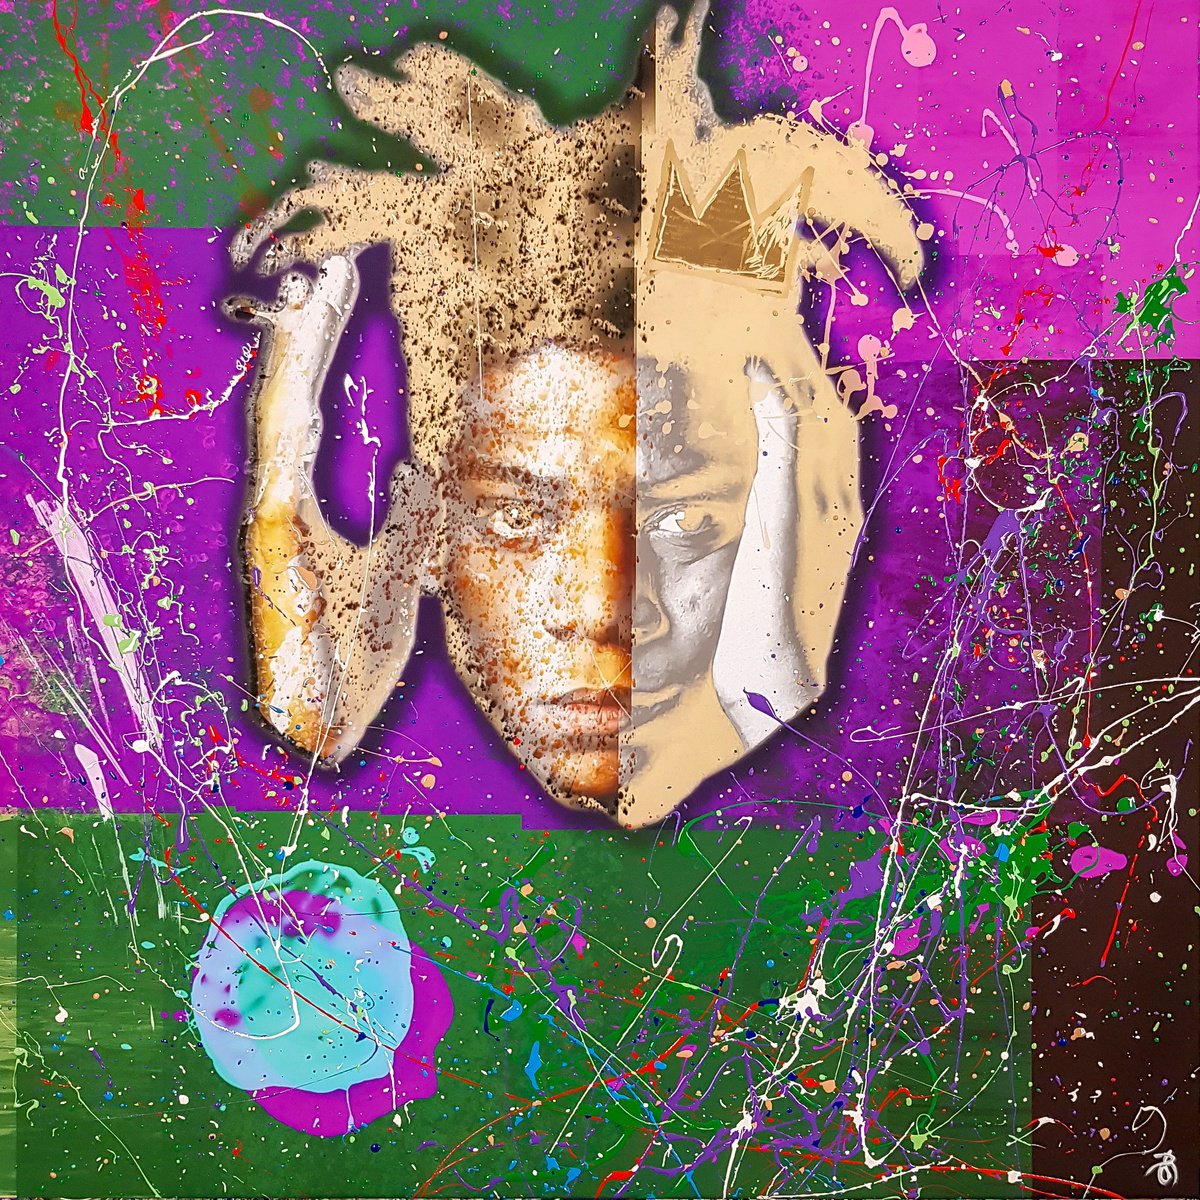 Splash Jean-Michel Basquiat N-1. 100x100x2 cm. Digital Art, Hand Embellished Gicle on Can... by Retne